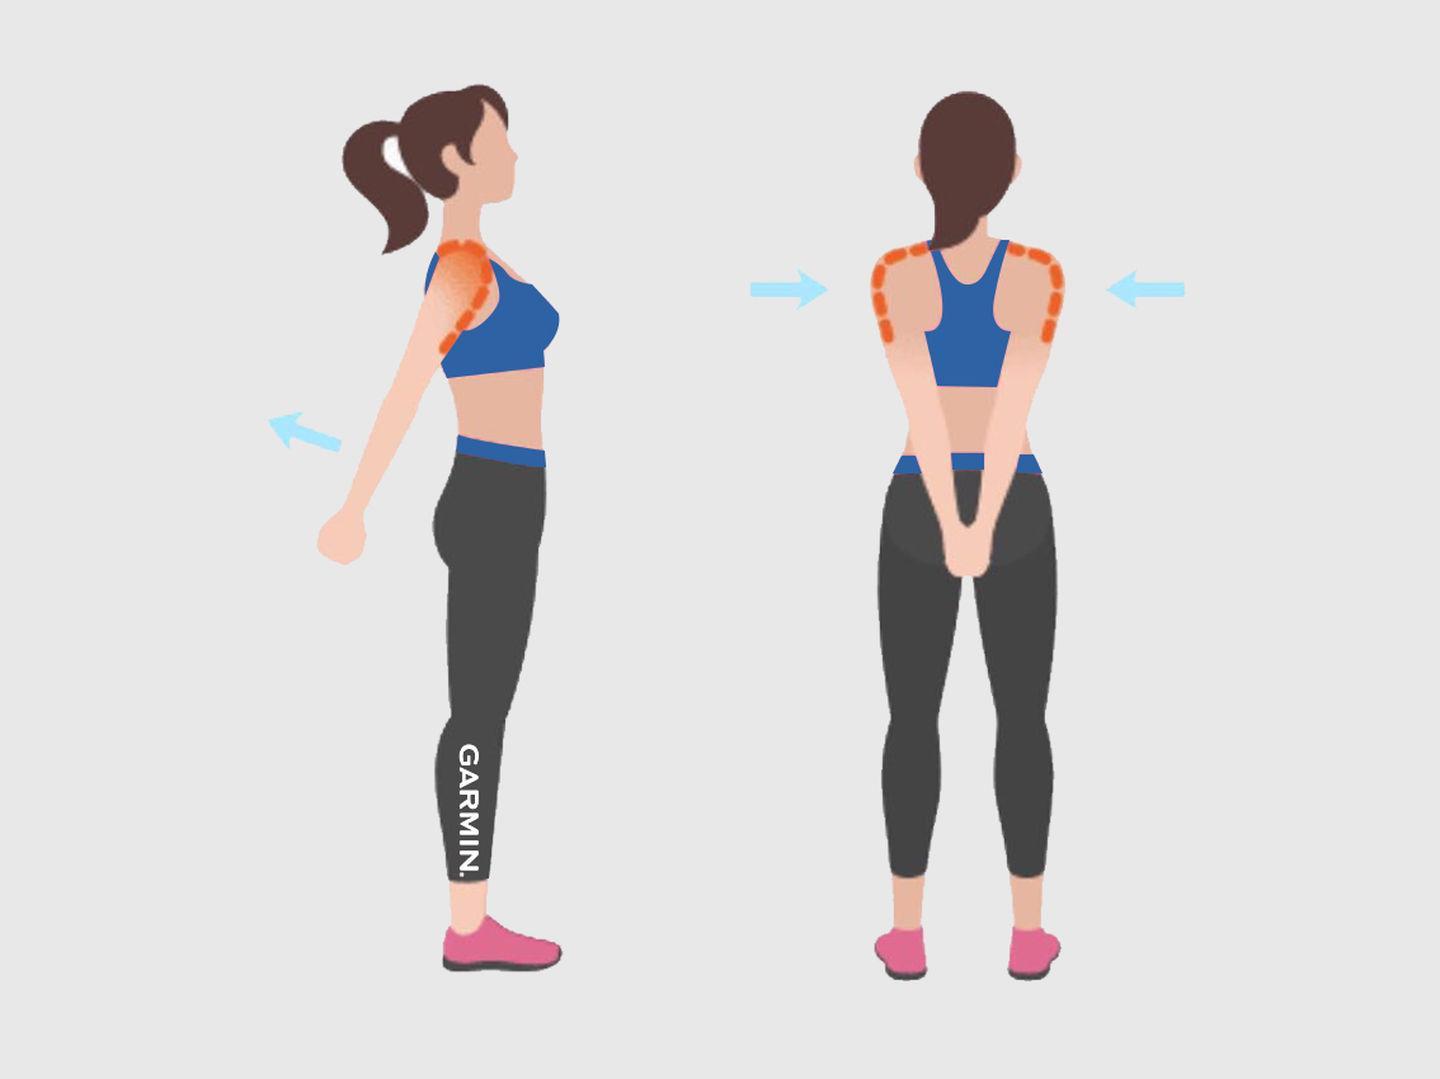 胸,背部拉伸动作说明:拉伸胸部以及舒缓背部肌肉